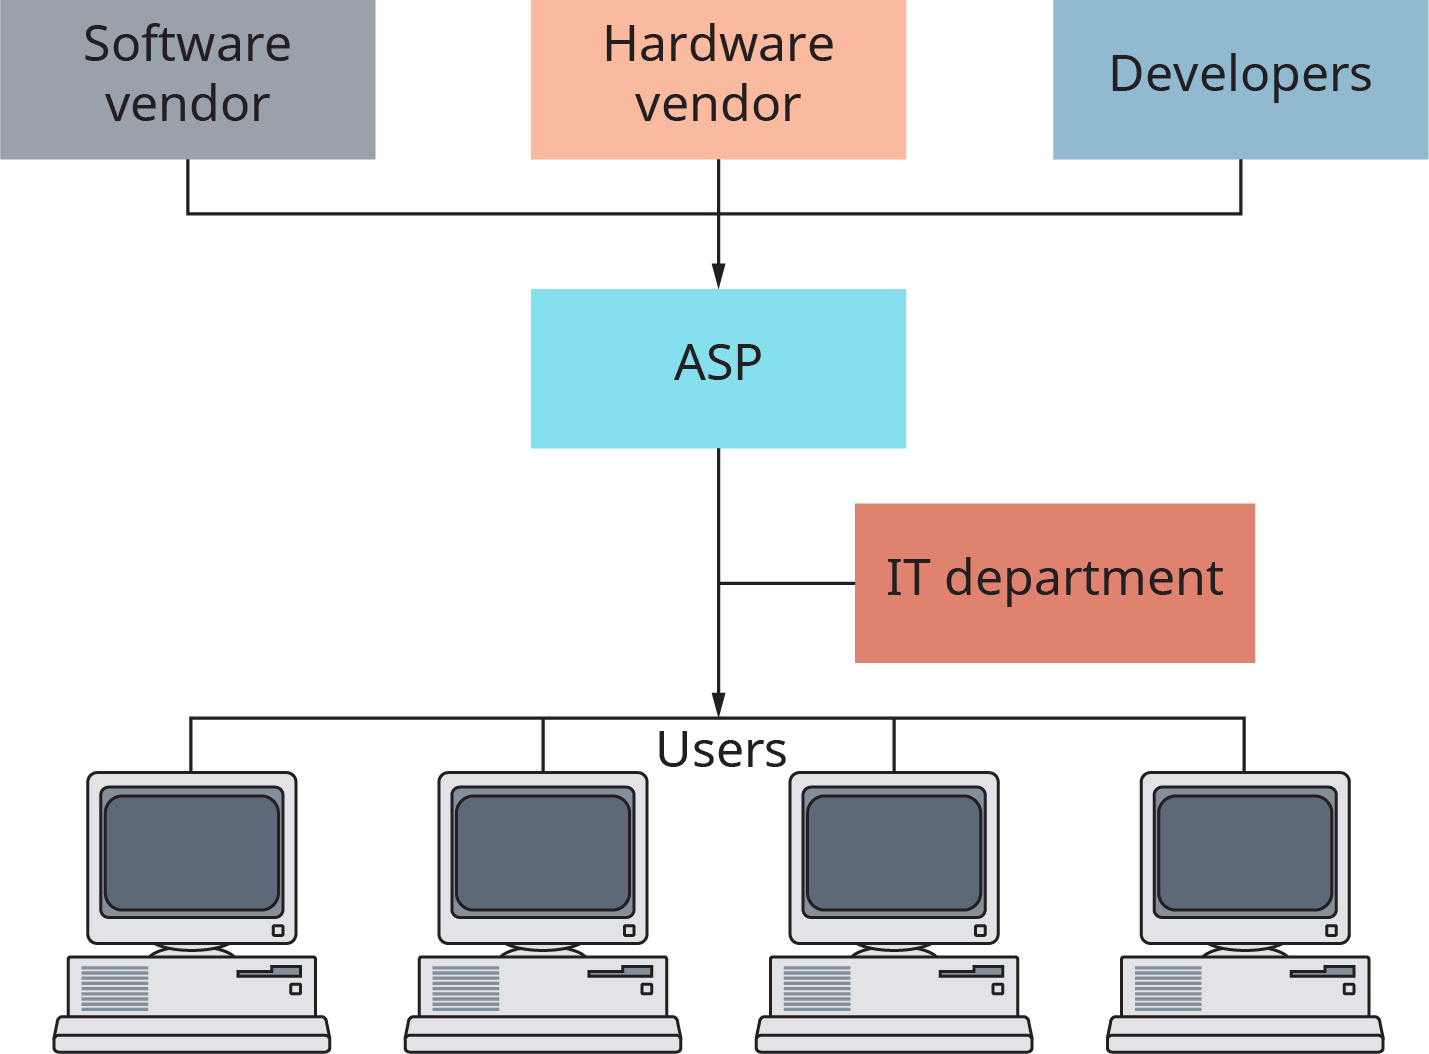 图表显示，软件供应商、硬件供应商和开发人员都流入 A S P，然后流向用户受众。 A S P 和用户之间是 I T 部门。